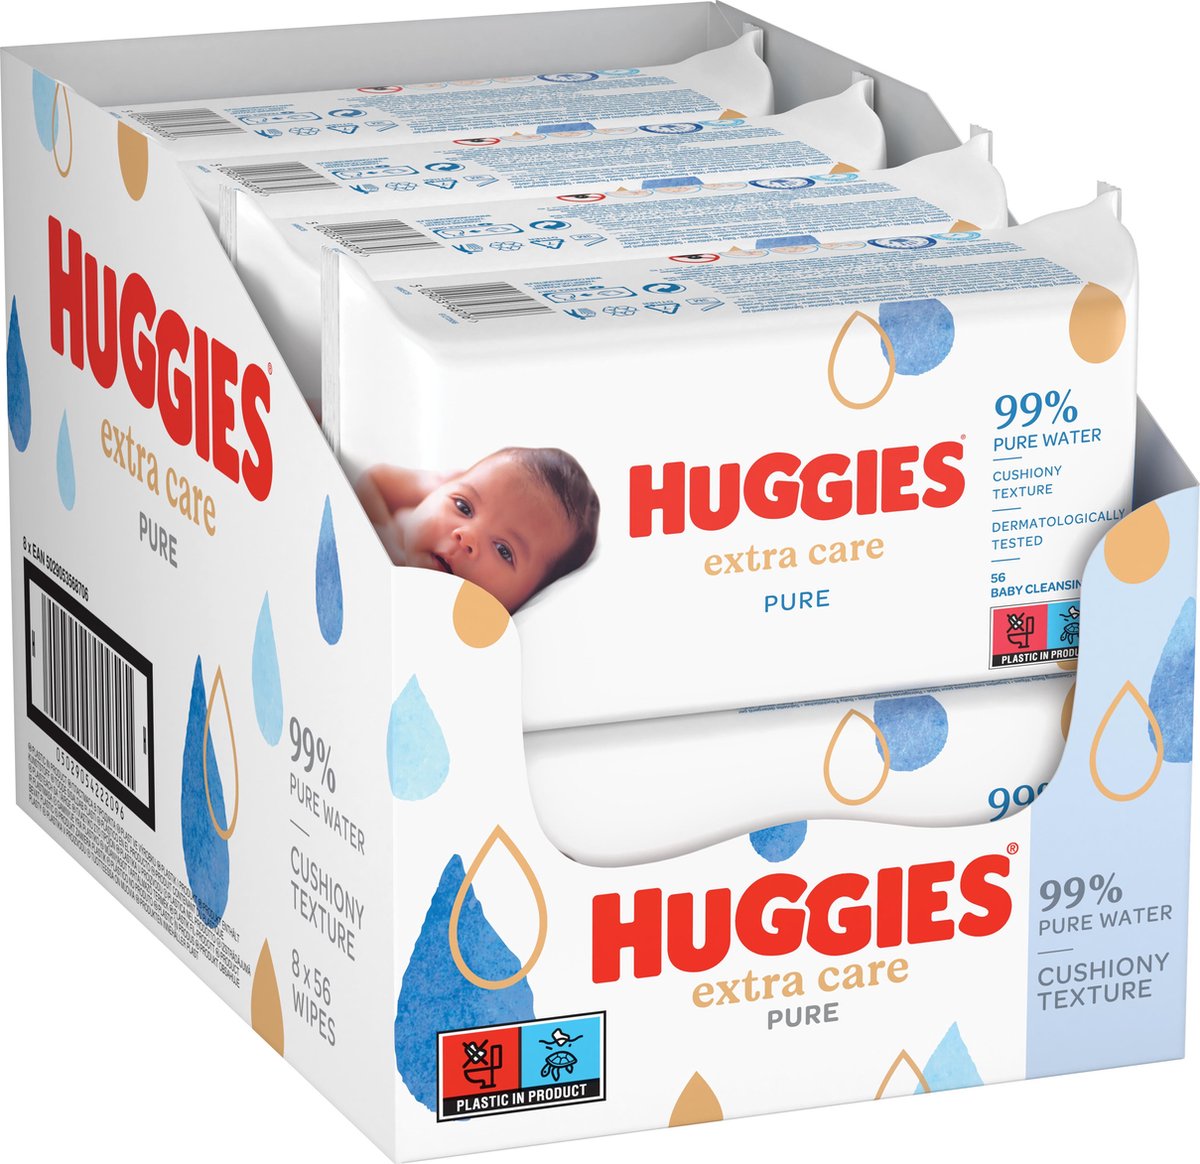 HUGGIES Pure lot lingettes nettoyantes pour bébé 168 lingettes pas cher 